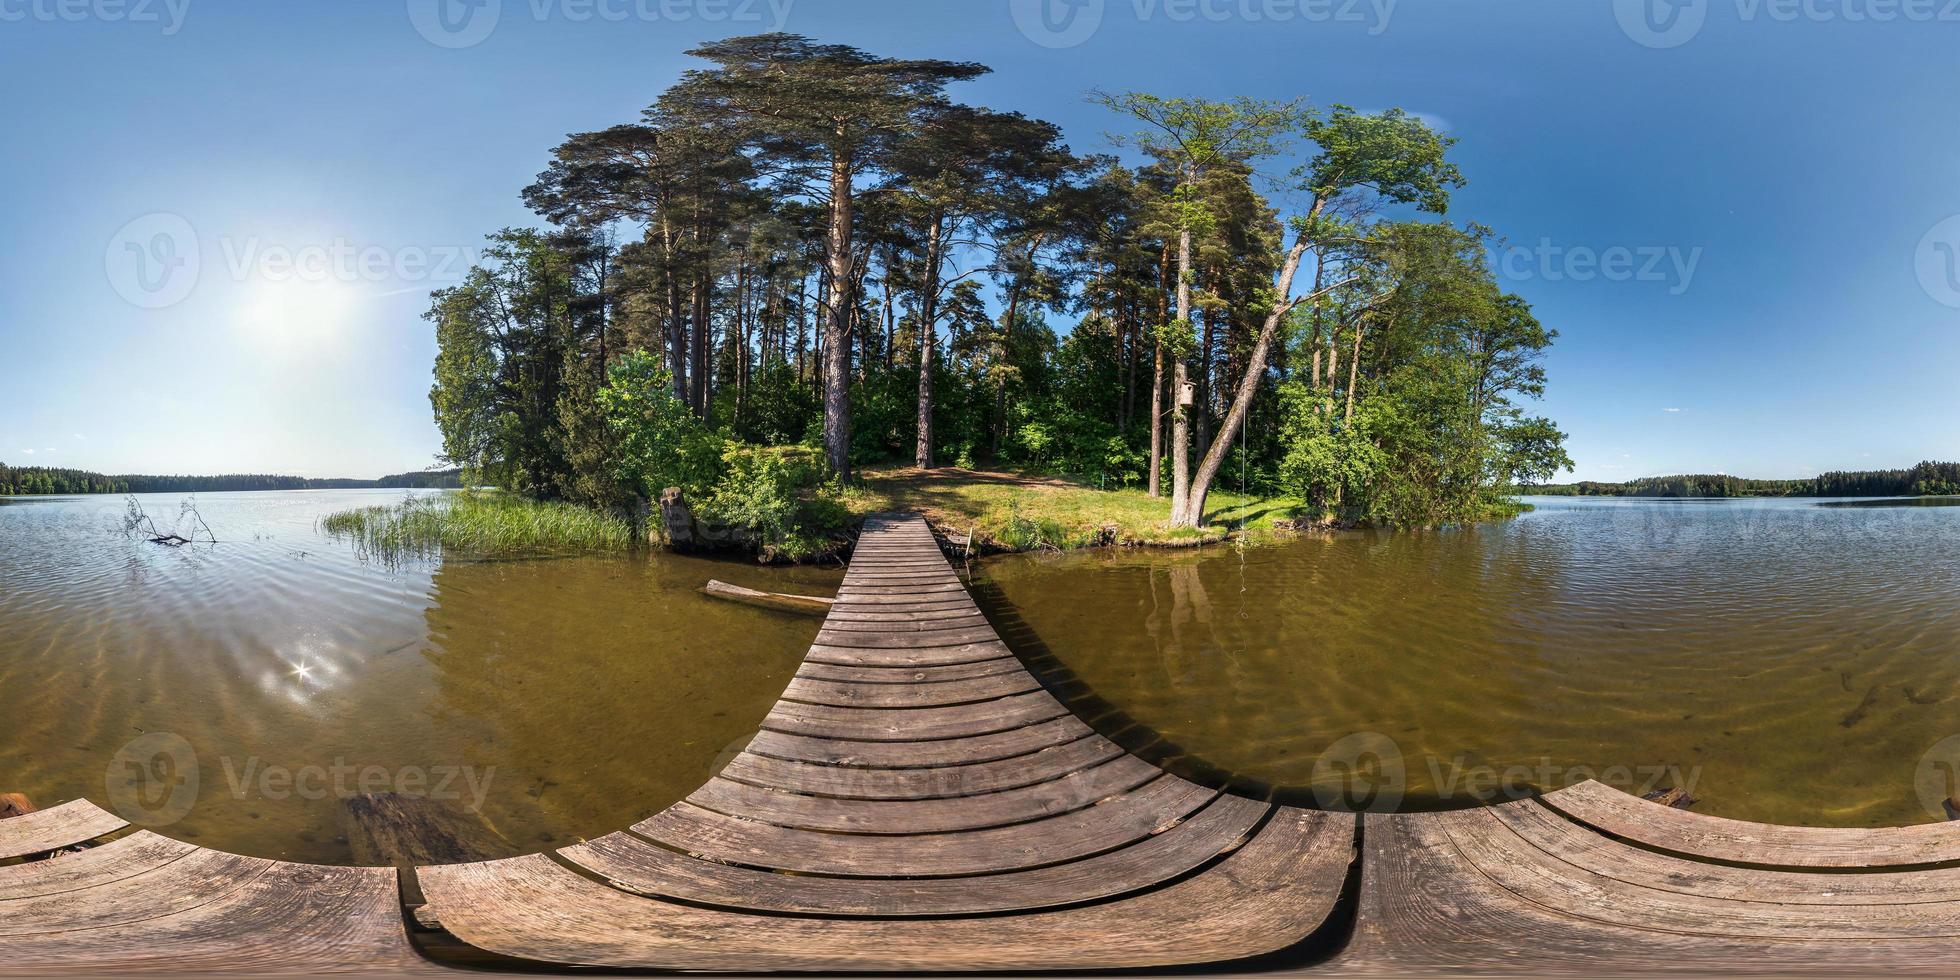 panorama completo sem costura 360 por 180 ângulo de visão no cais de um enorme lago de floresta em dia ensolarado de verão em projeção equirretangular, conteúdo skybox vr foto